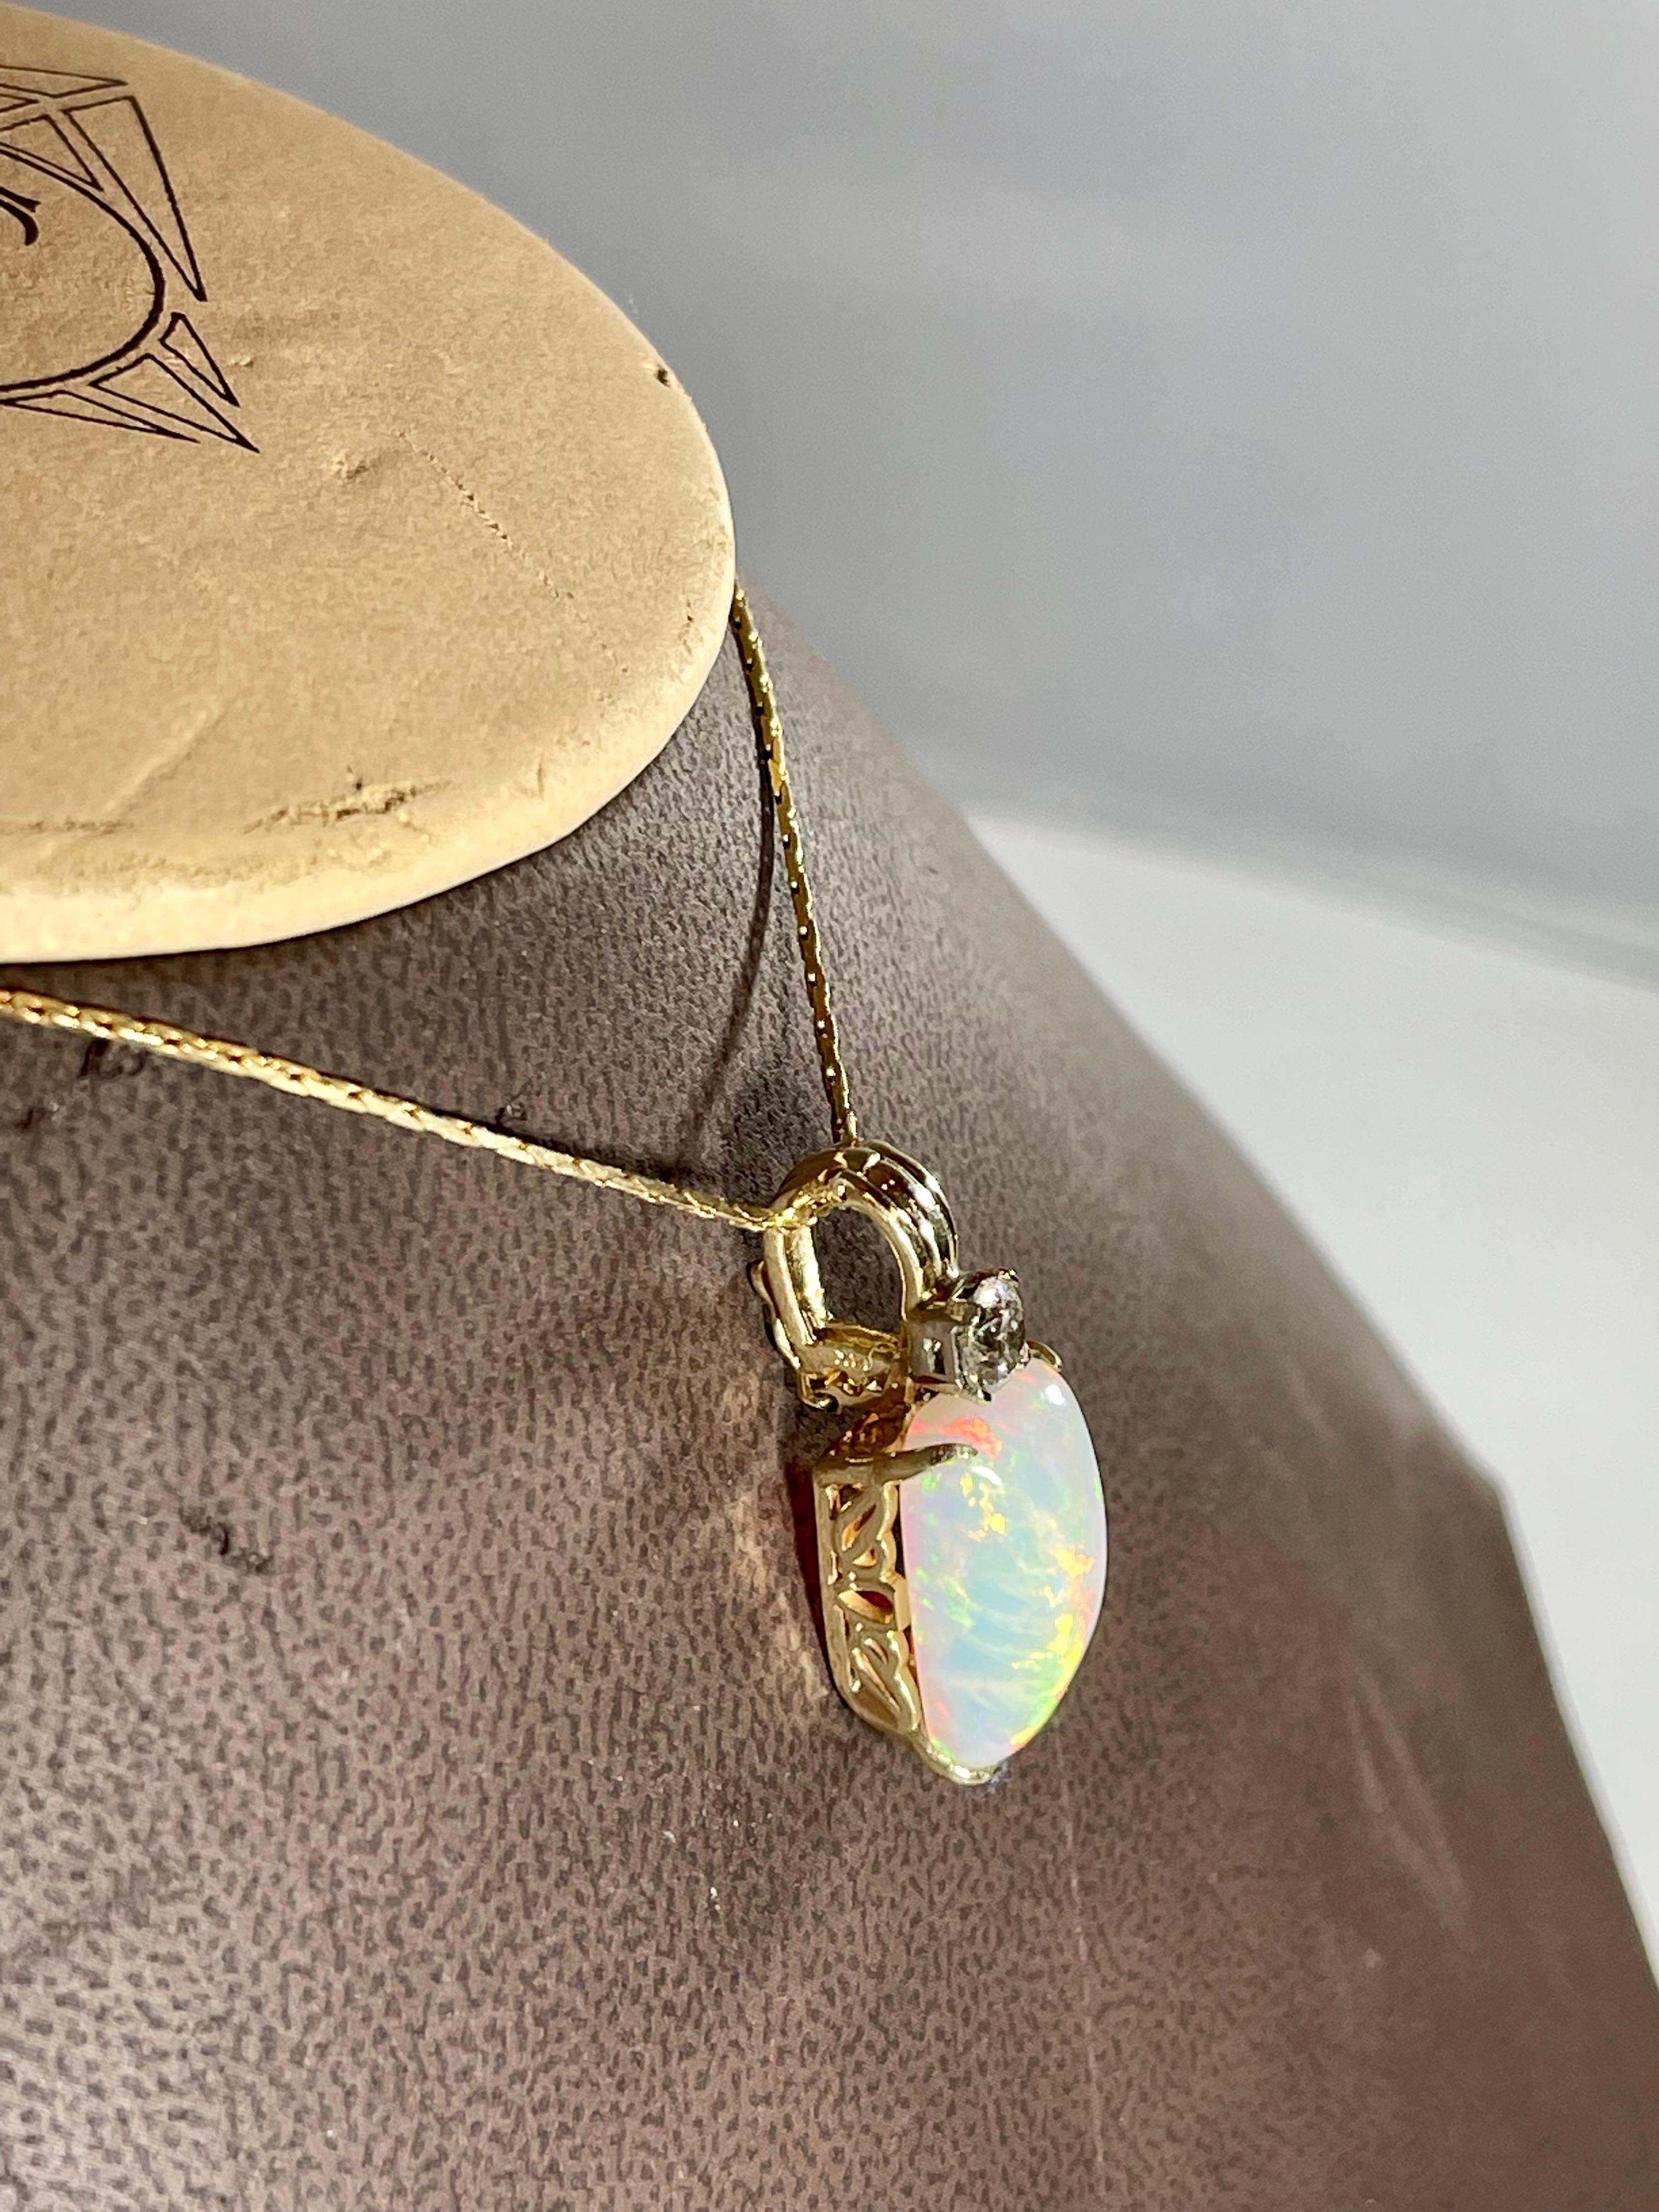 7 Ct Ethiopian Opal & Diamond Pendant / Necklace 14 Karat + 14 Kt Gold Chain For Sale 9